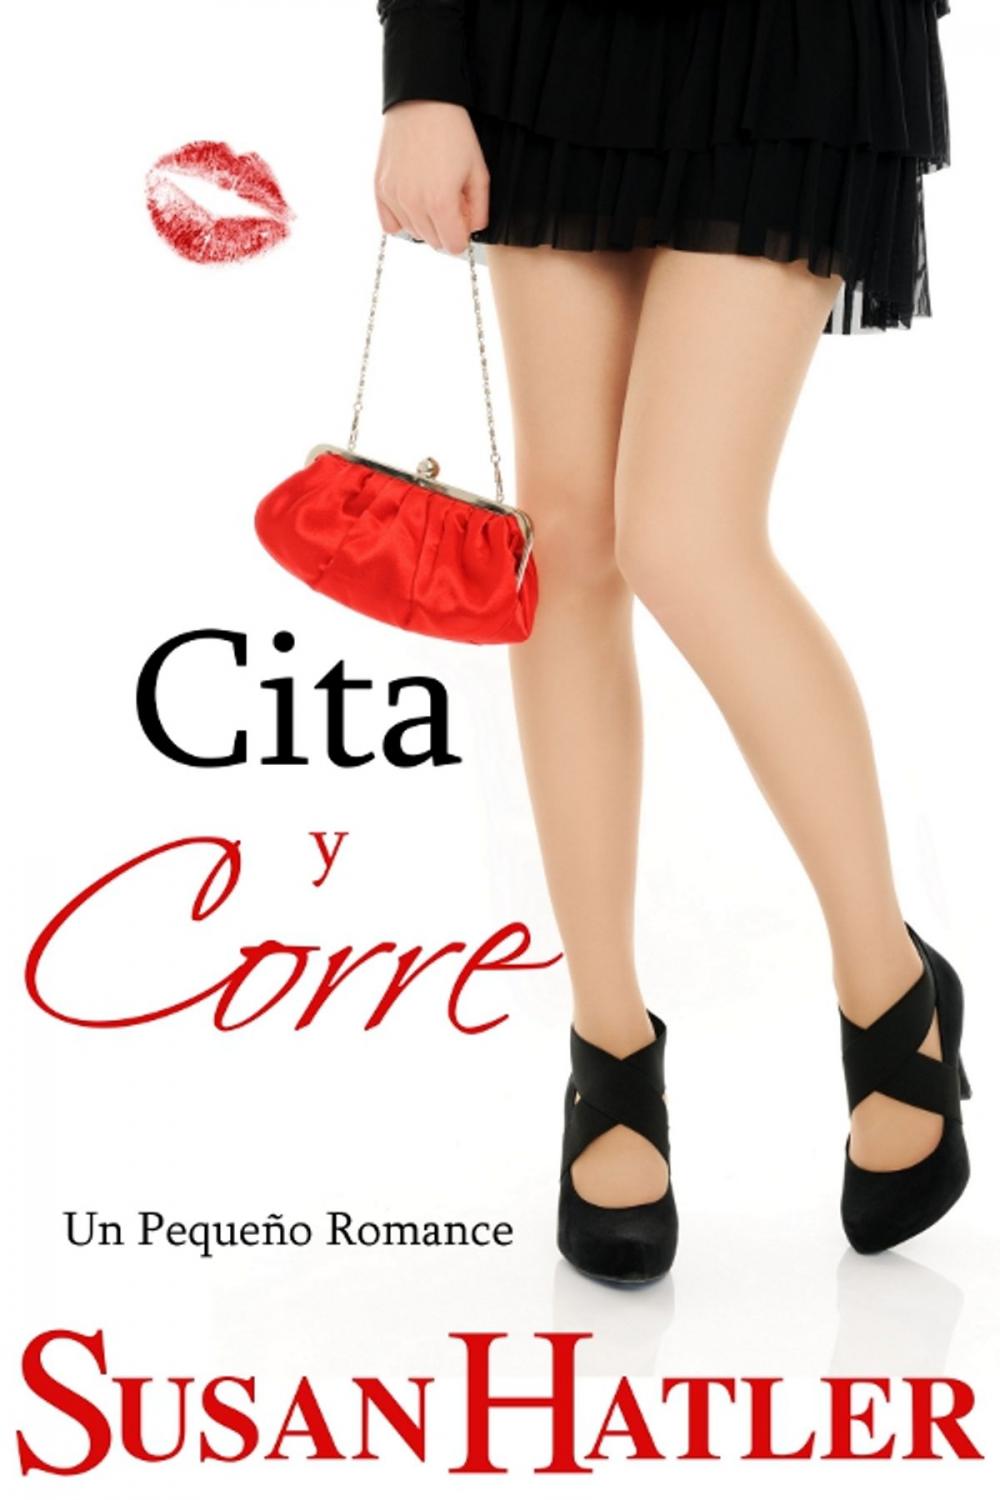 Big bigCover of Cita y Corre